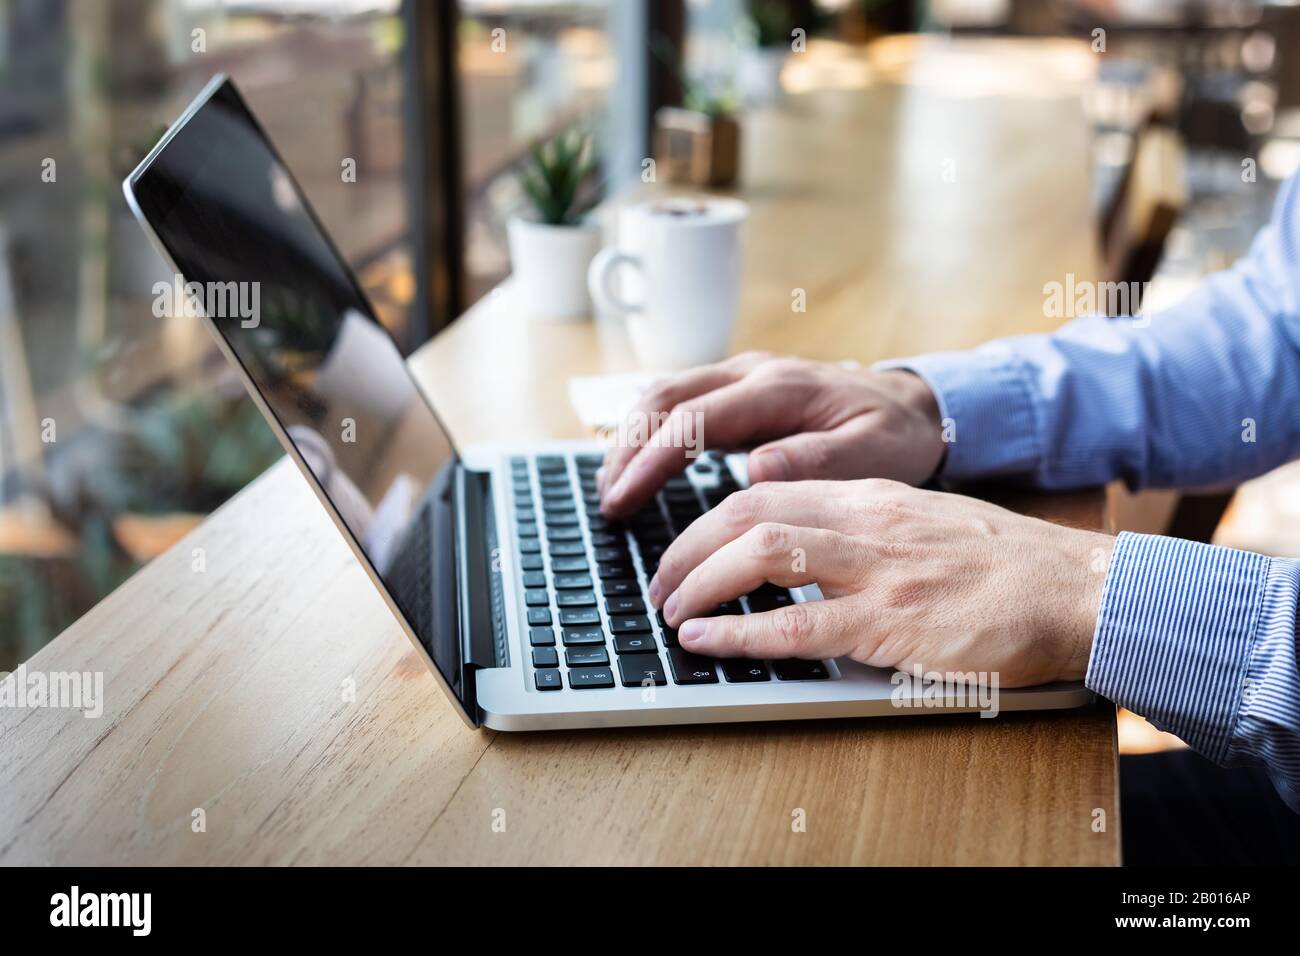 Mani che digitano sulla tastiera del computer portatile, persona che scrive e-mail o rapporto documento in caffè con caffè e internet wifi, stile casual, copia-spazio Foto Stock